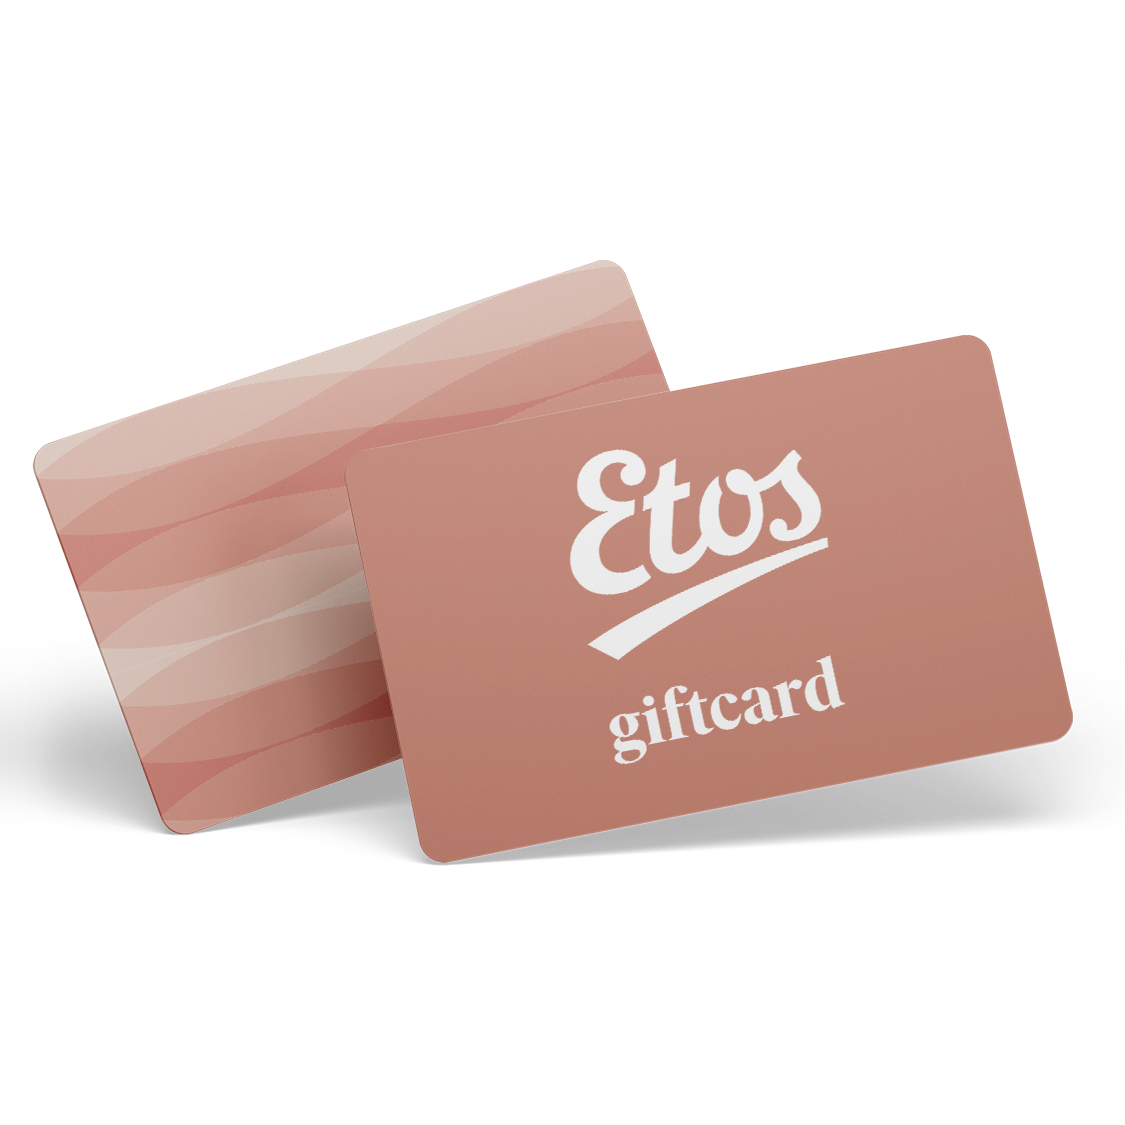 €120,- Etos giftcard